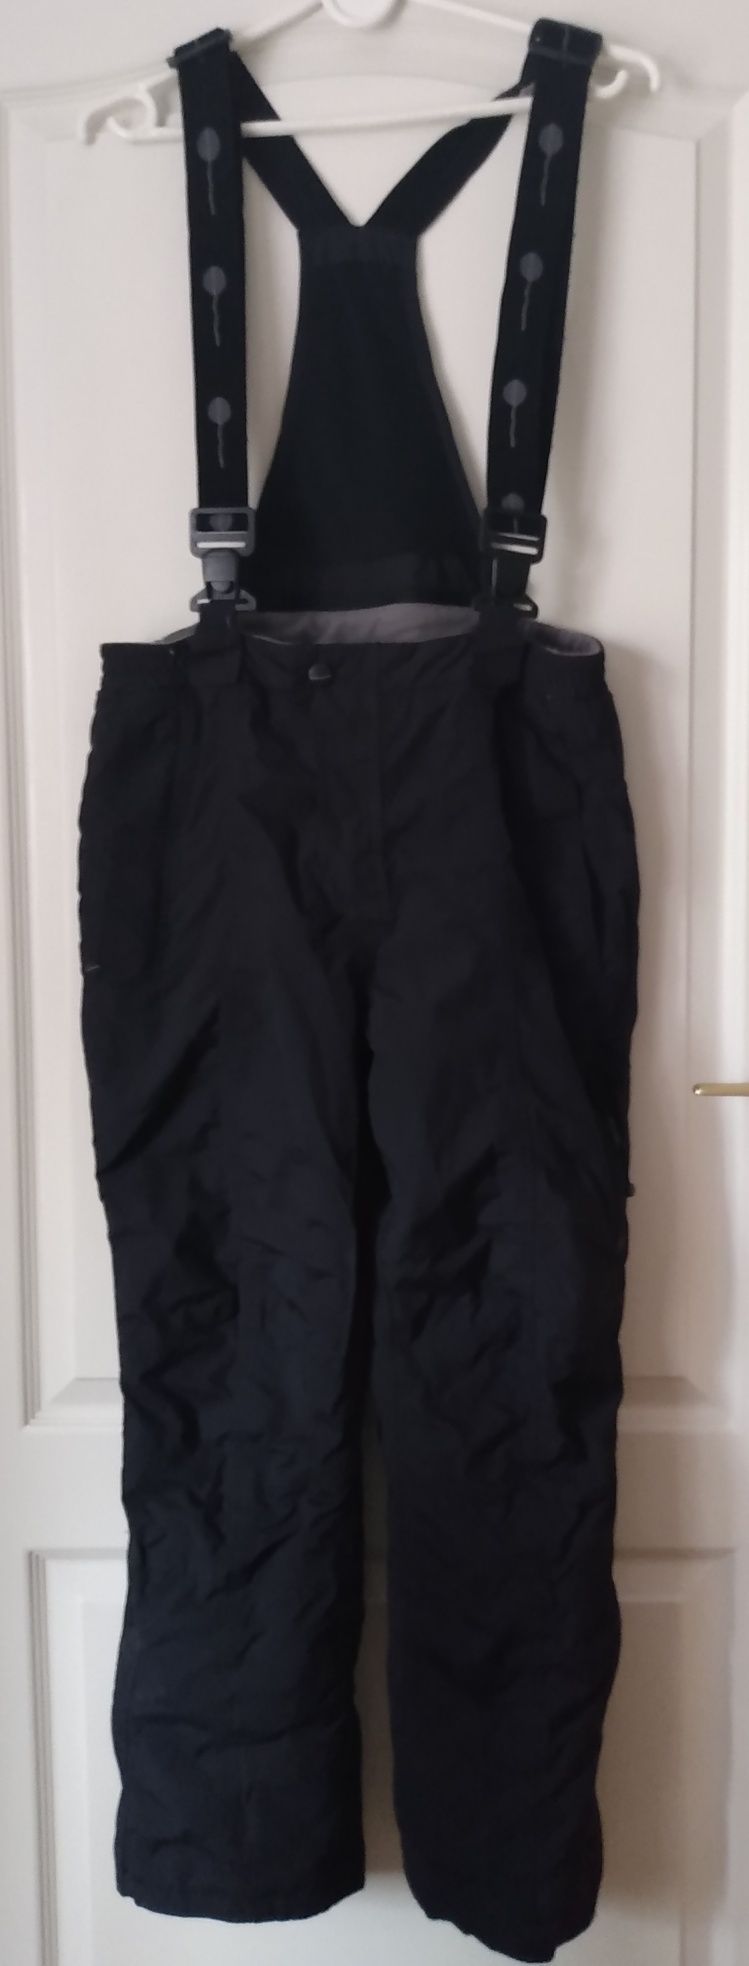 Czarne ocieplane spodnie robocze S/M